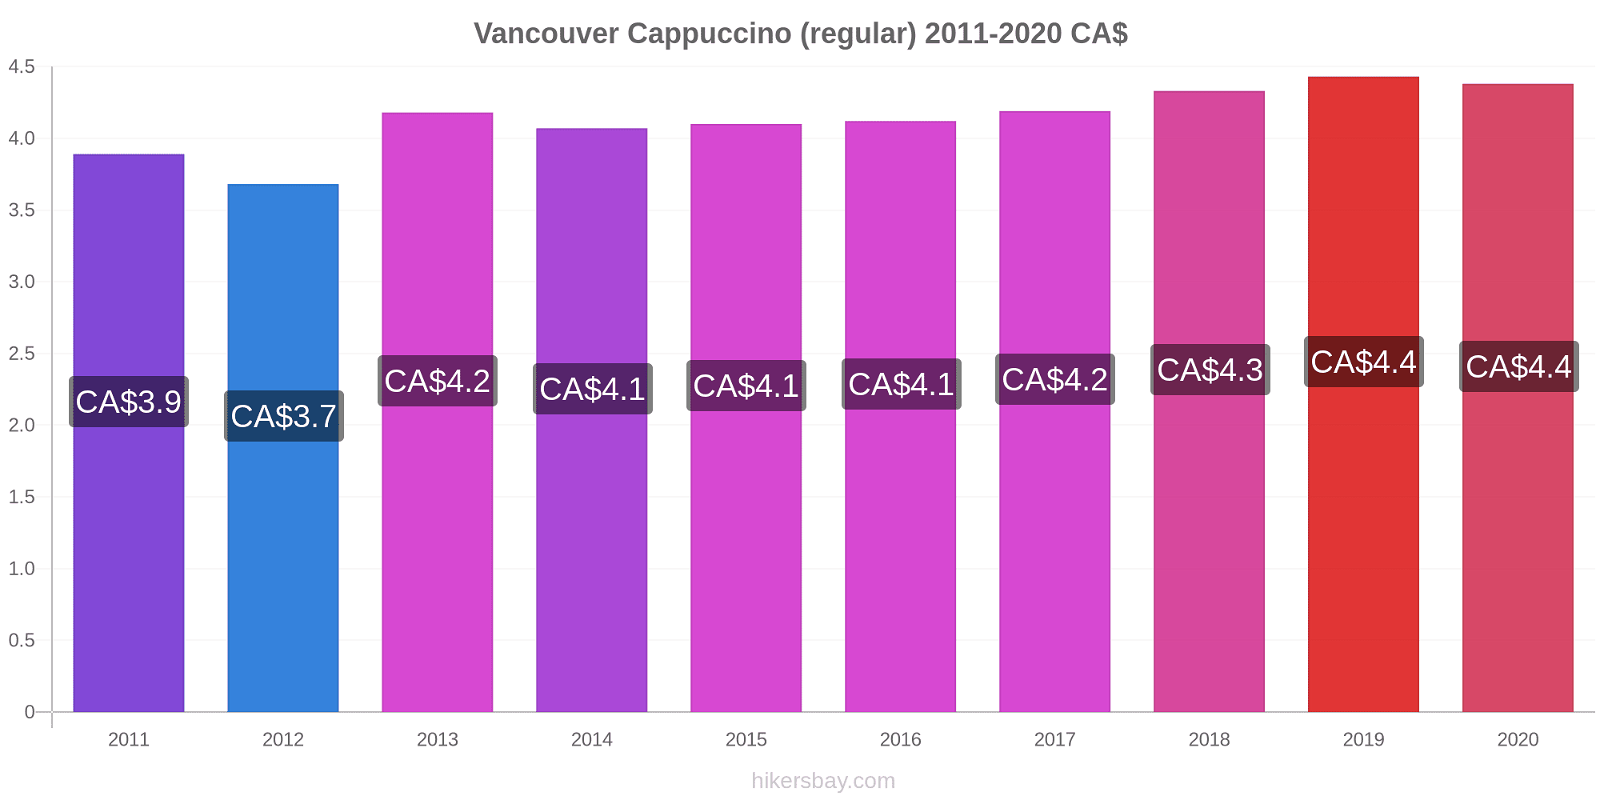 Vancouver price changes Cappuccino (regular) hikersbay.com